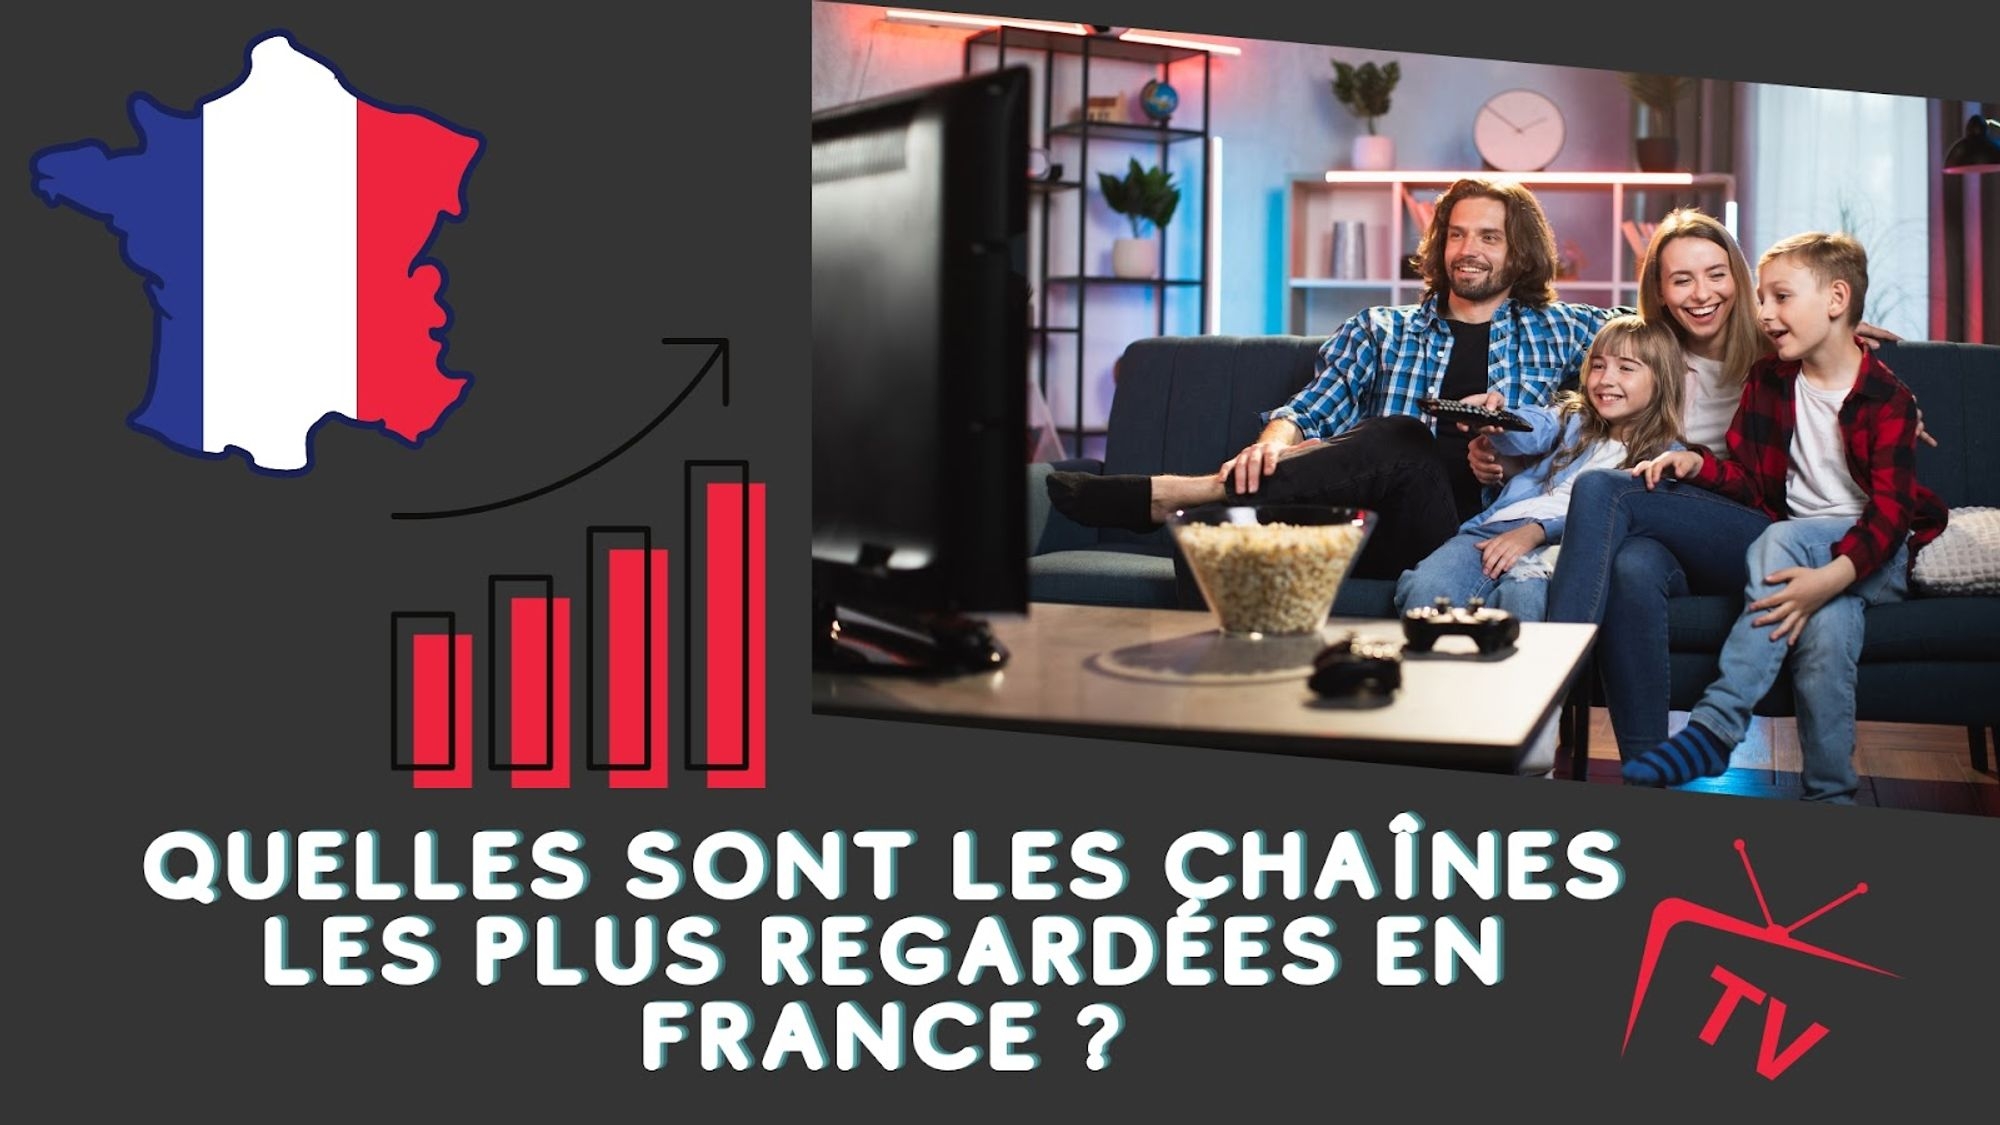 Les chaînes les plus regardées en France : on vous dit tout